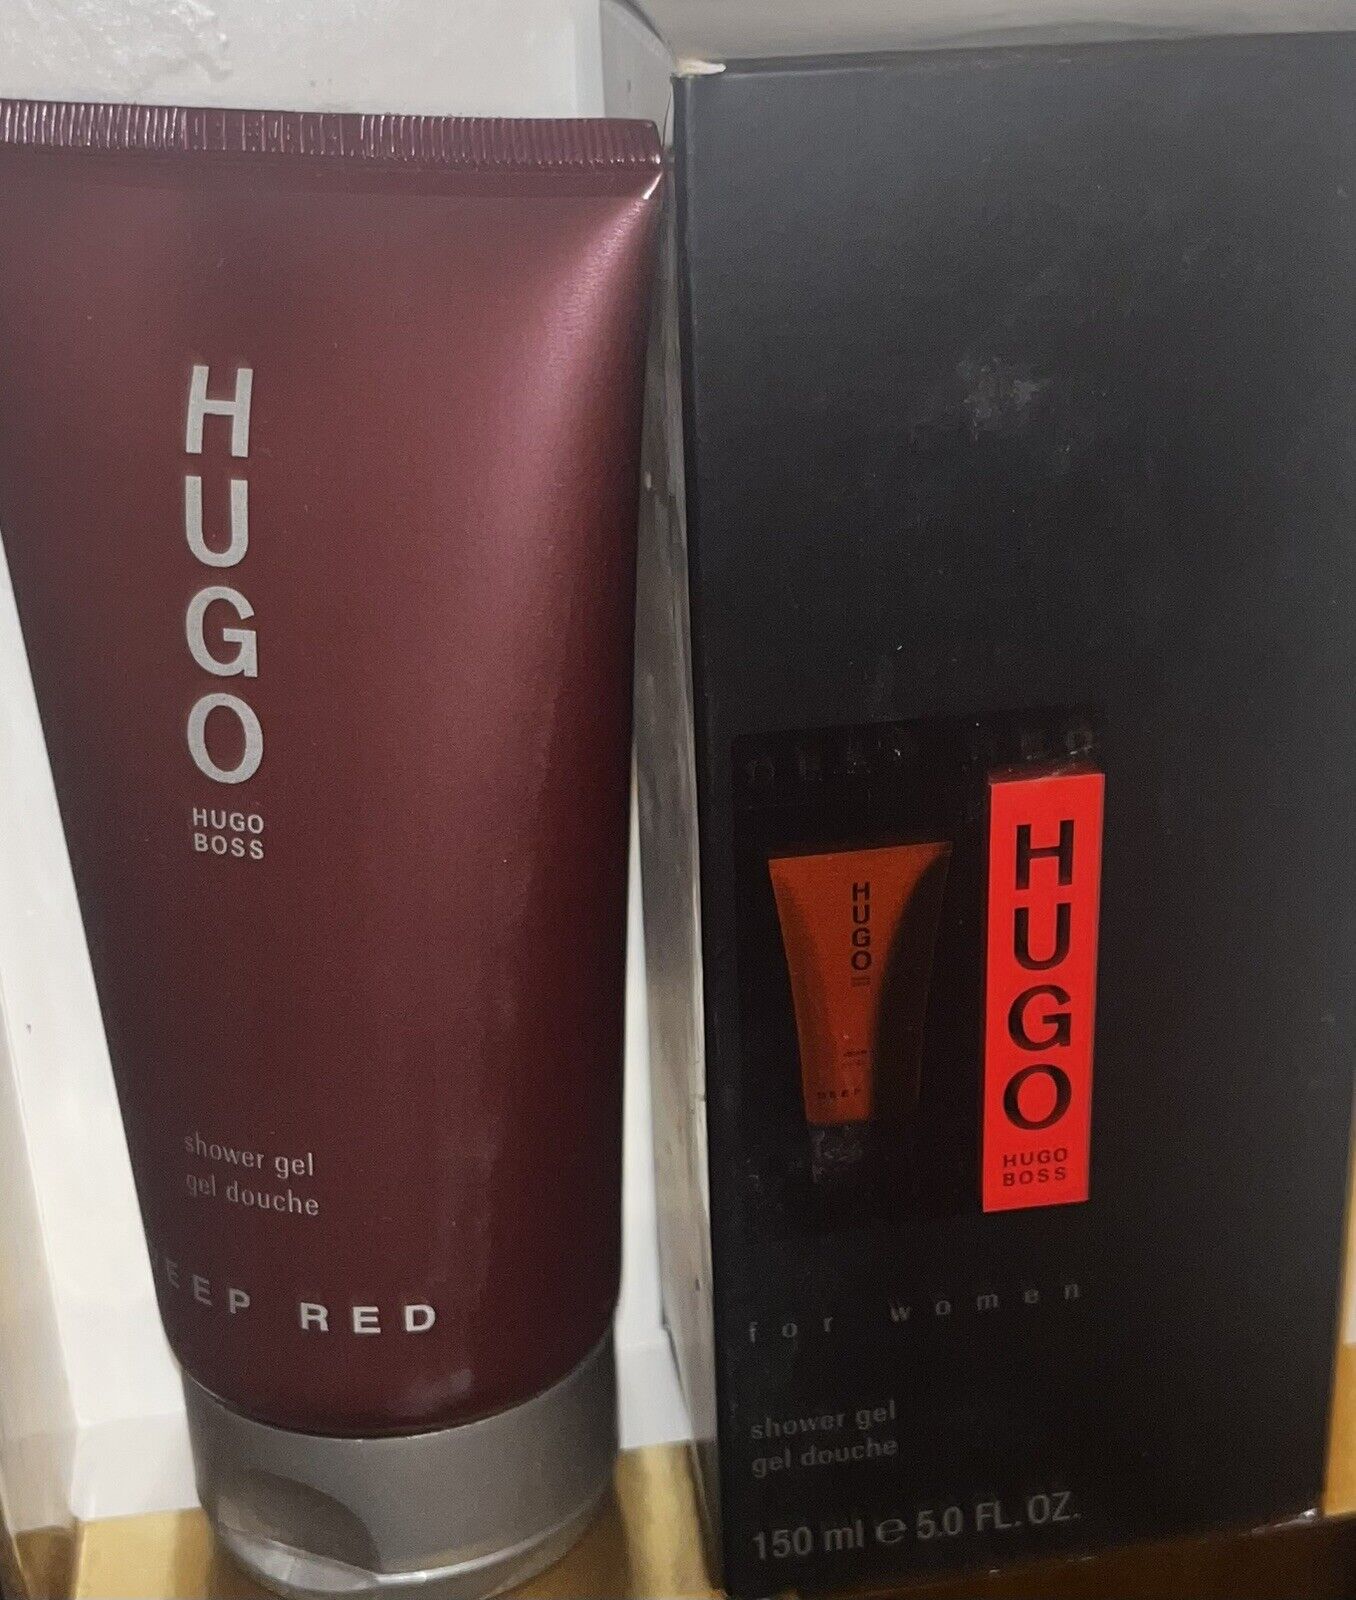 HUGO BOSS DEEP RED SHOWER GEL 5 OZ for WOMEN 